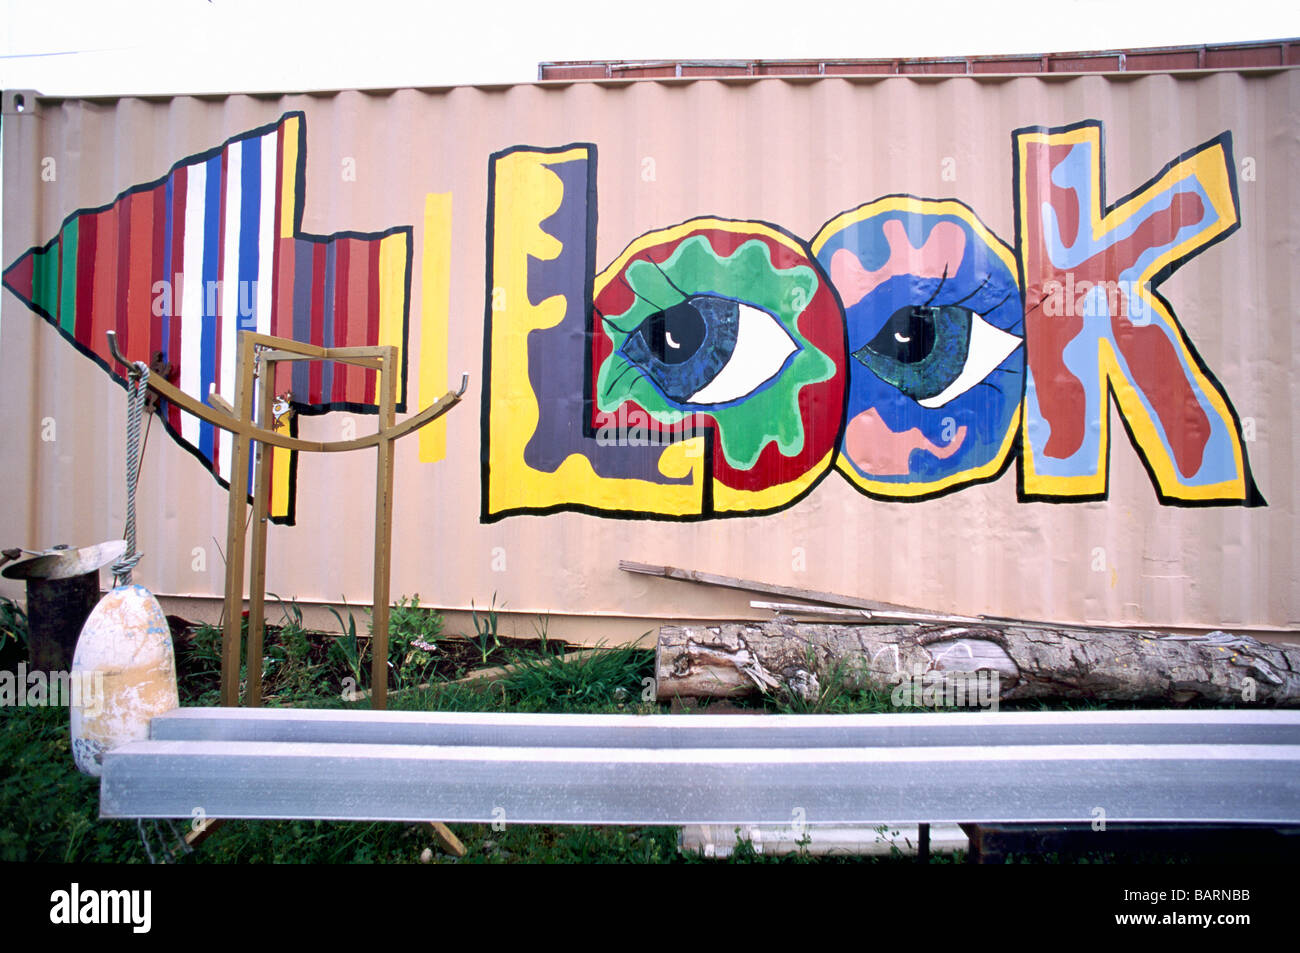 Bunte aussehen Graffiti Kunst Hinweisschild mit Pfeil in Richtung links auf Seite Außenwand eines Gebäudes gemalt Stockfoto